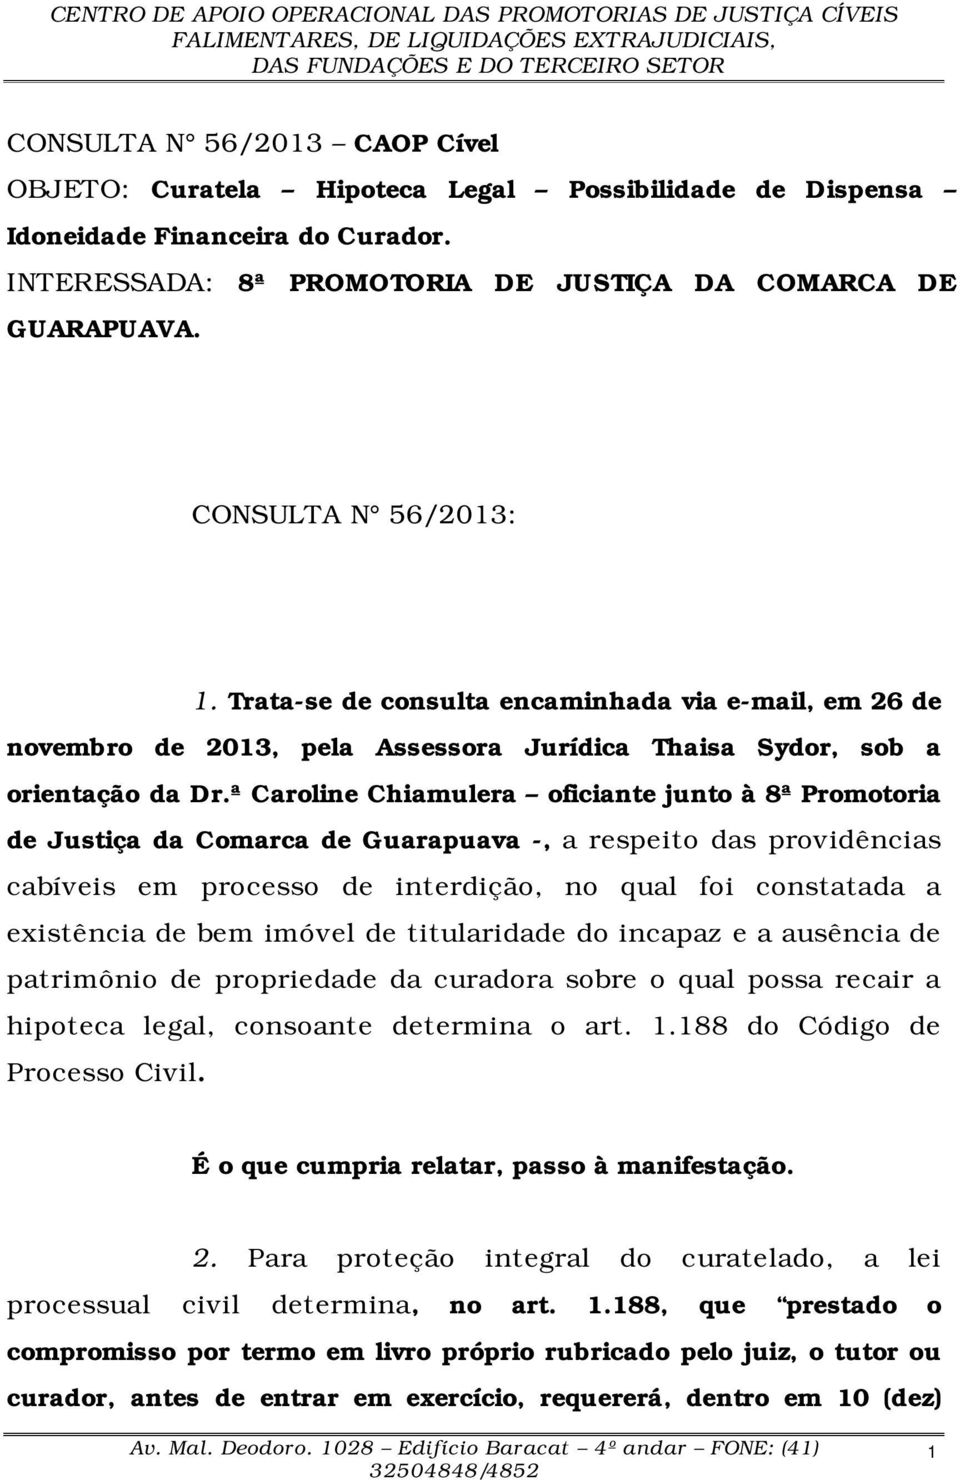 ª Caroline Chiamulera oficiante junto à 8ª Promotoria de Justiça da Comarca de Guarapuava -, a respeito das providências cabíveis em processo de interdição, no qual foi constatada a existência de bem